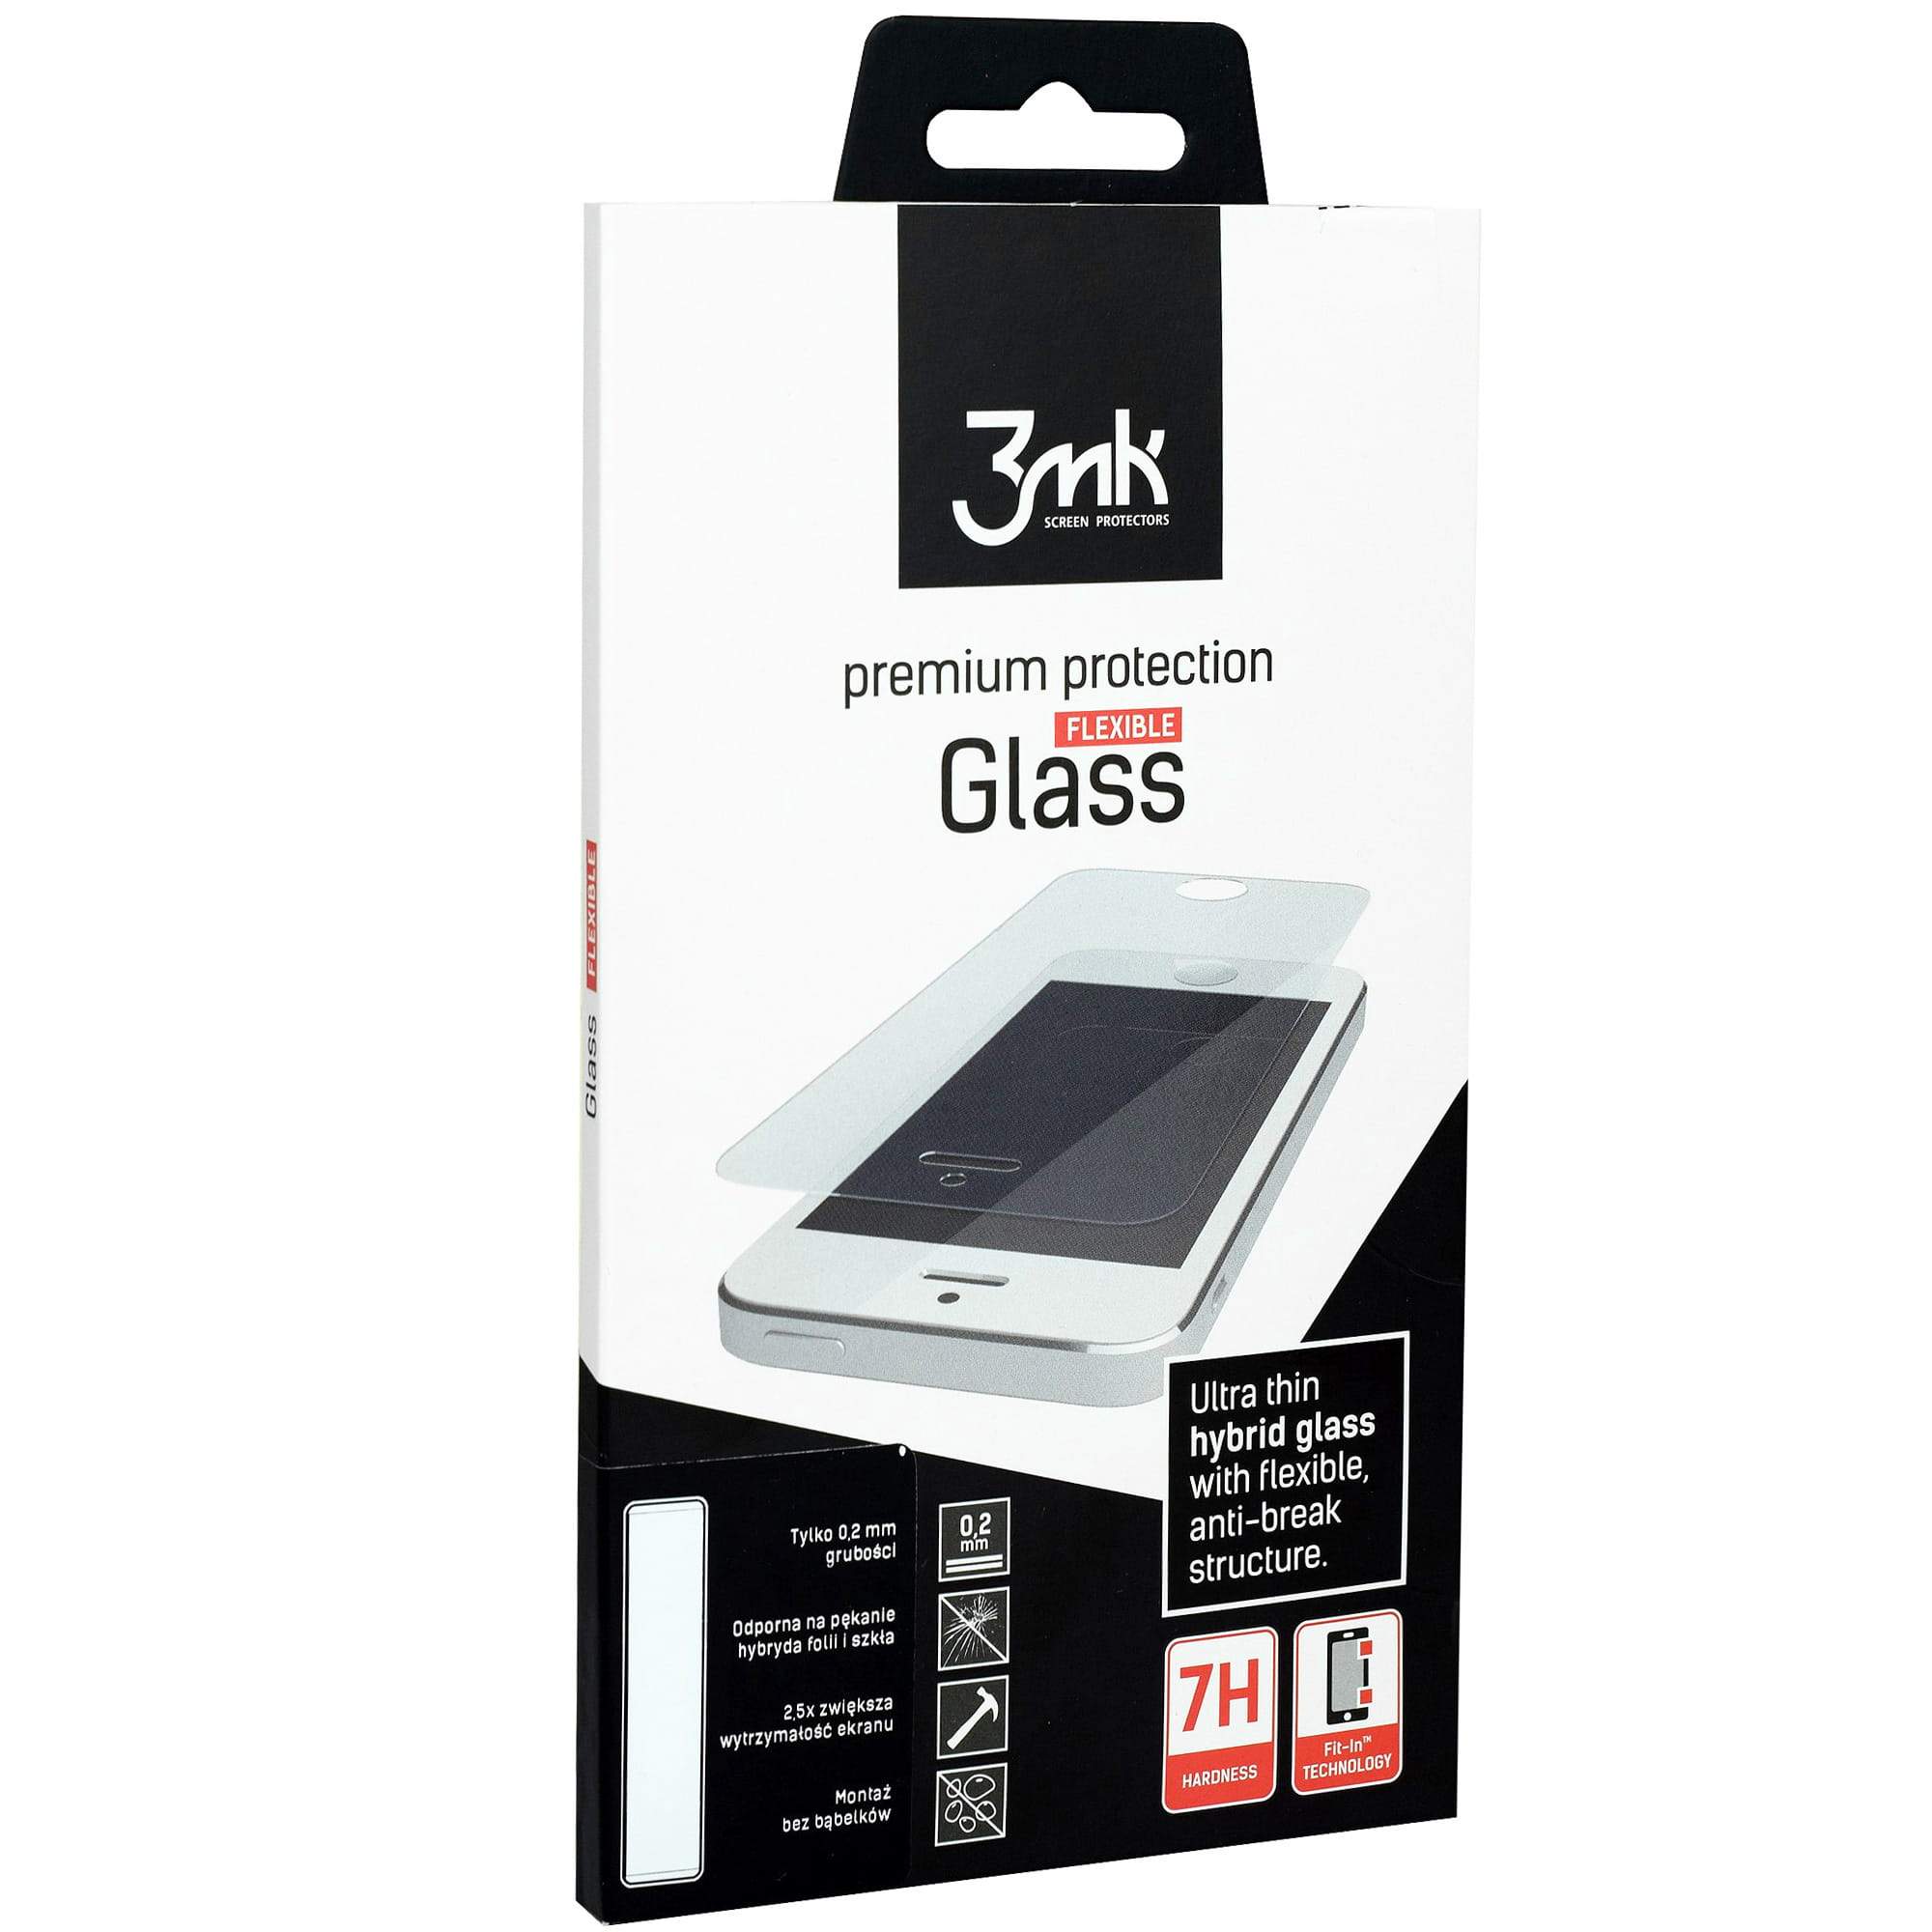 Hybridglas 3mk Flexible Glass Huawei P20 Pro transparent